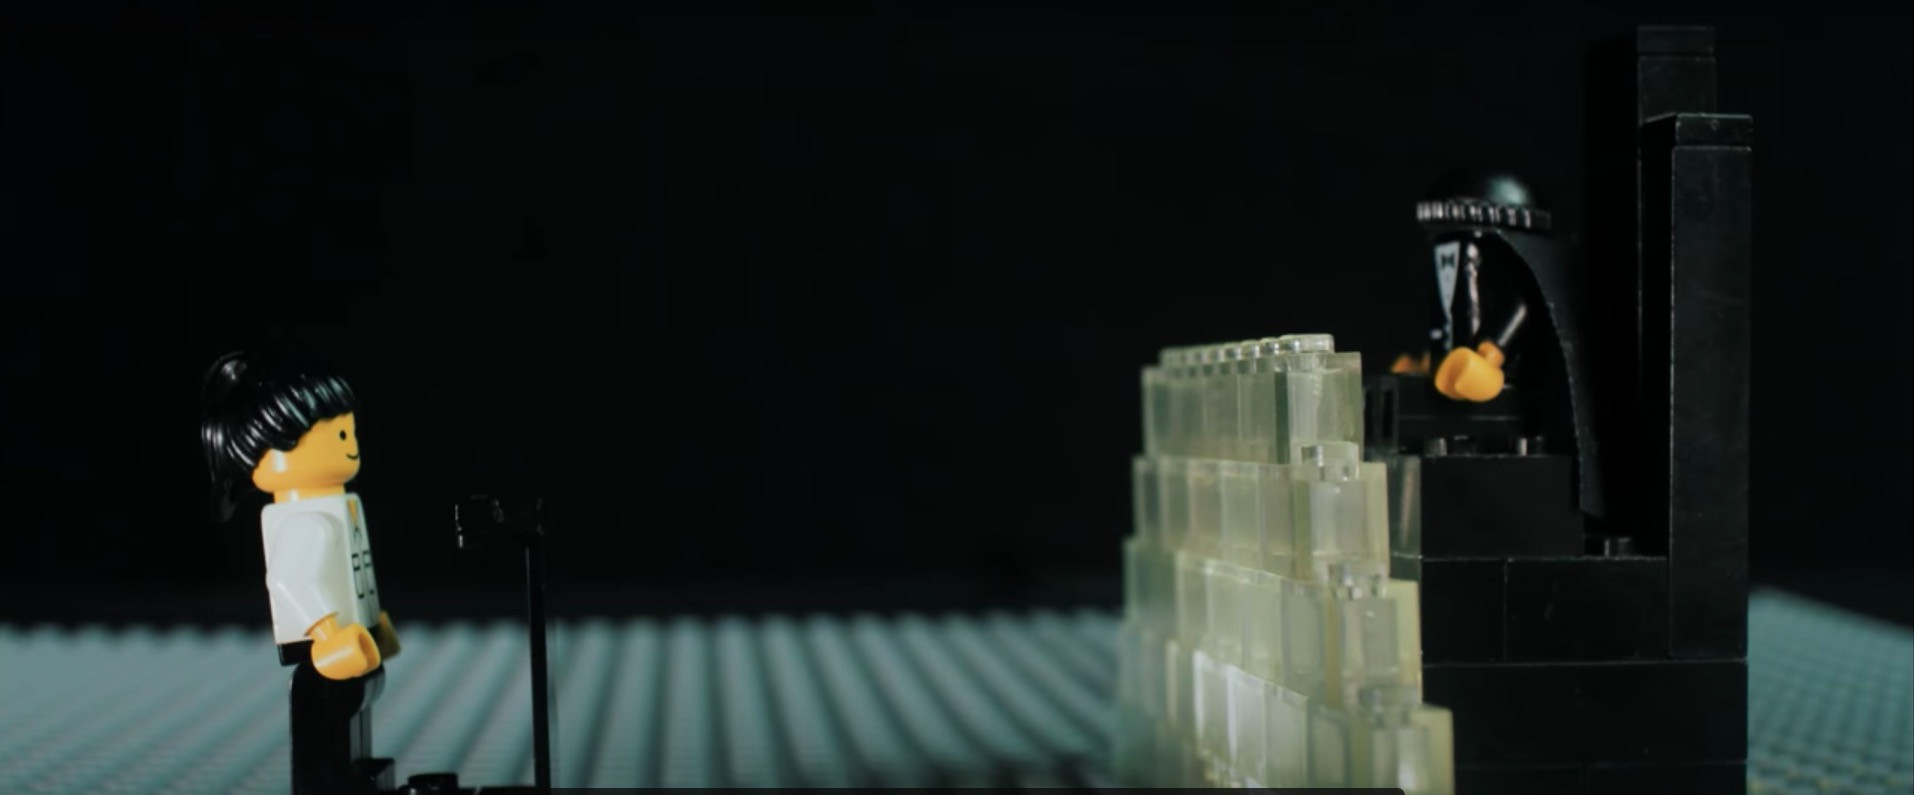 ‘Ενα βίντεο με Lego αφηγείται τον παραλογισμό των κατηγοριών εναντίον της Ηριάννας